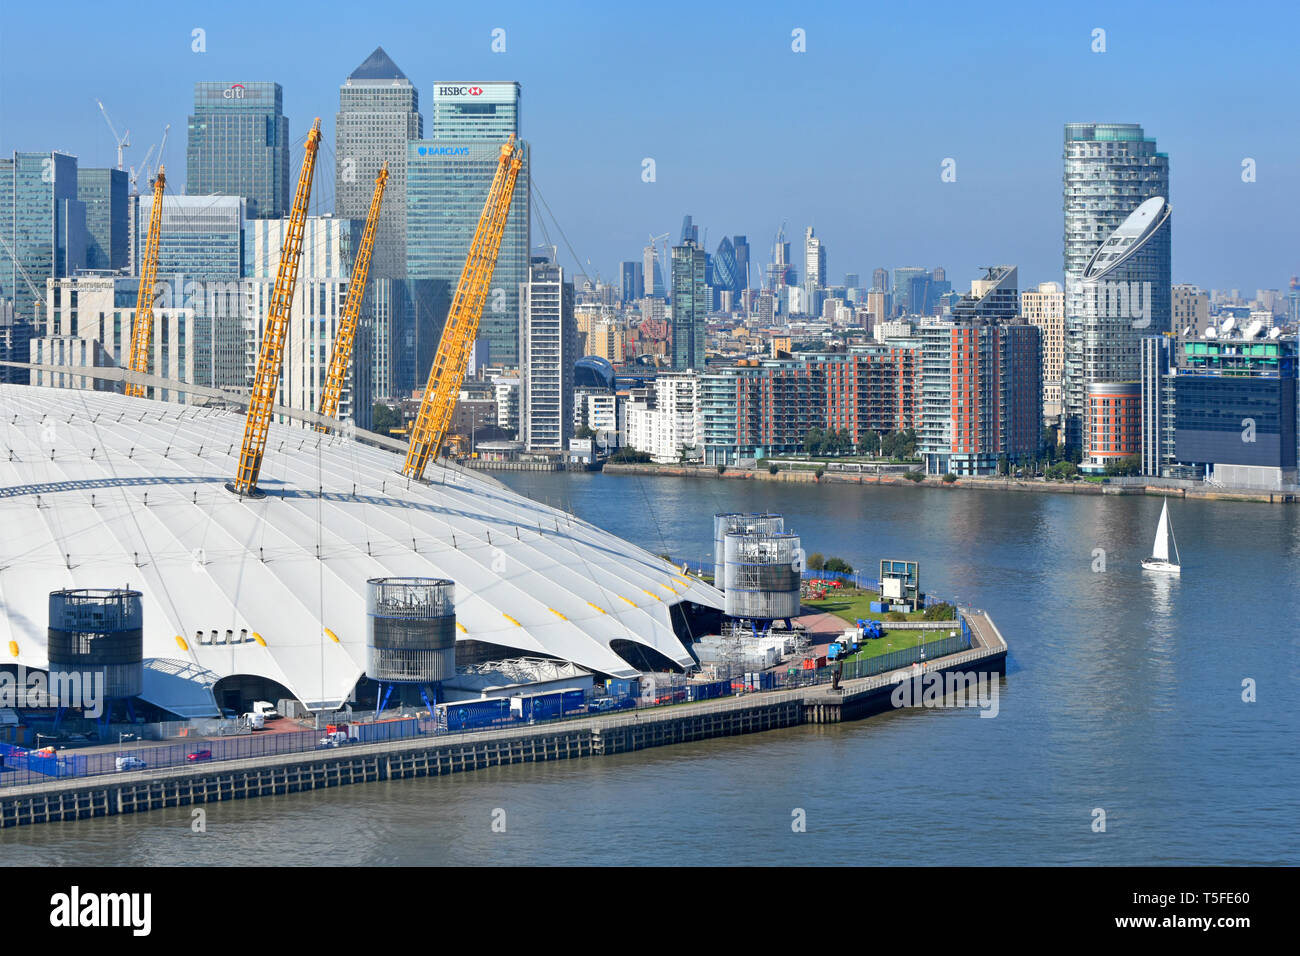 Vue aérienne au coude de Tamise Bateau à voile & London Canary Wharf cityscape skyline O2 Arena de Londres Greenwich Peninsula toit dome England UK Banque D'Images